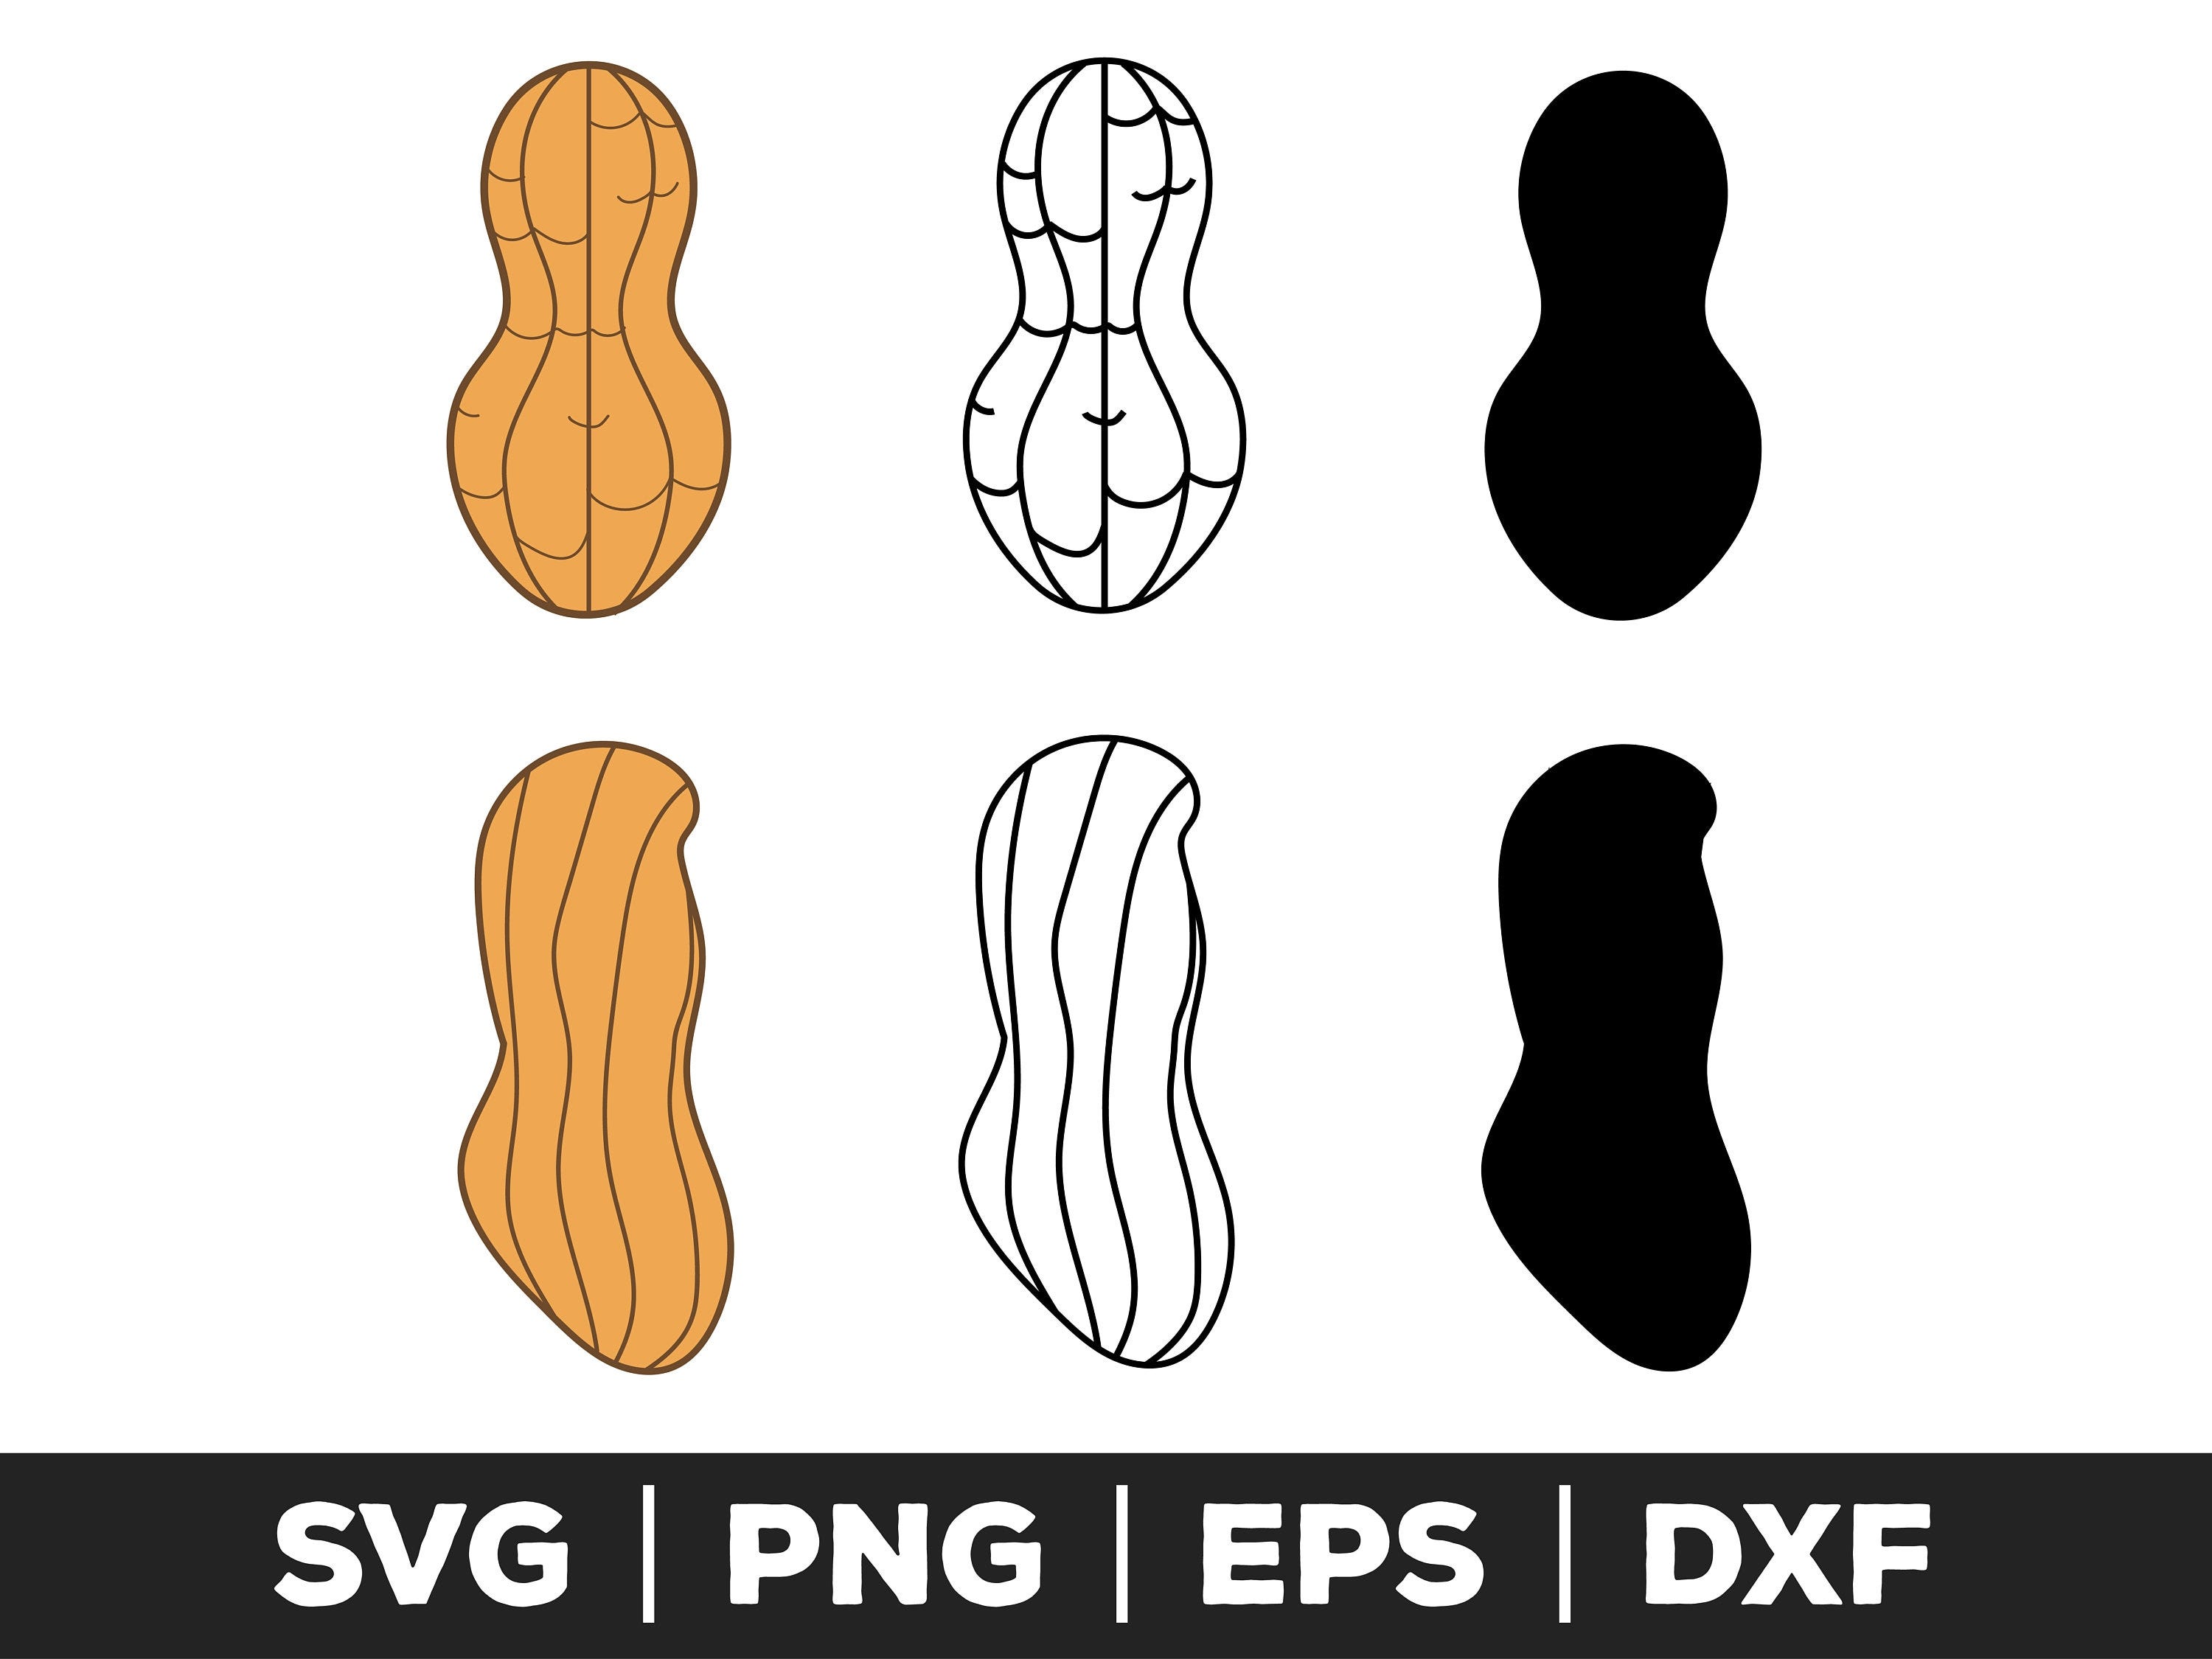 Peanut SVG, Peanut PNG, Peanut EPS, Peanut Clip Art, Peanut Cut Files for Cricut, Peanut Cut Files for Silhouette